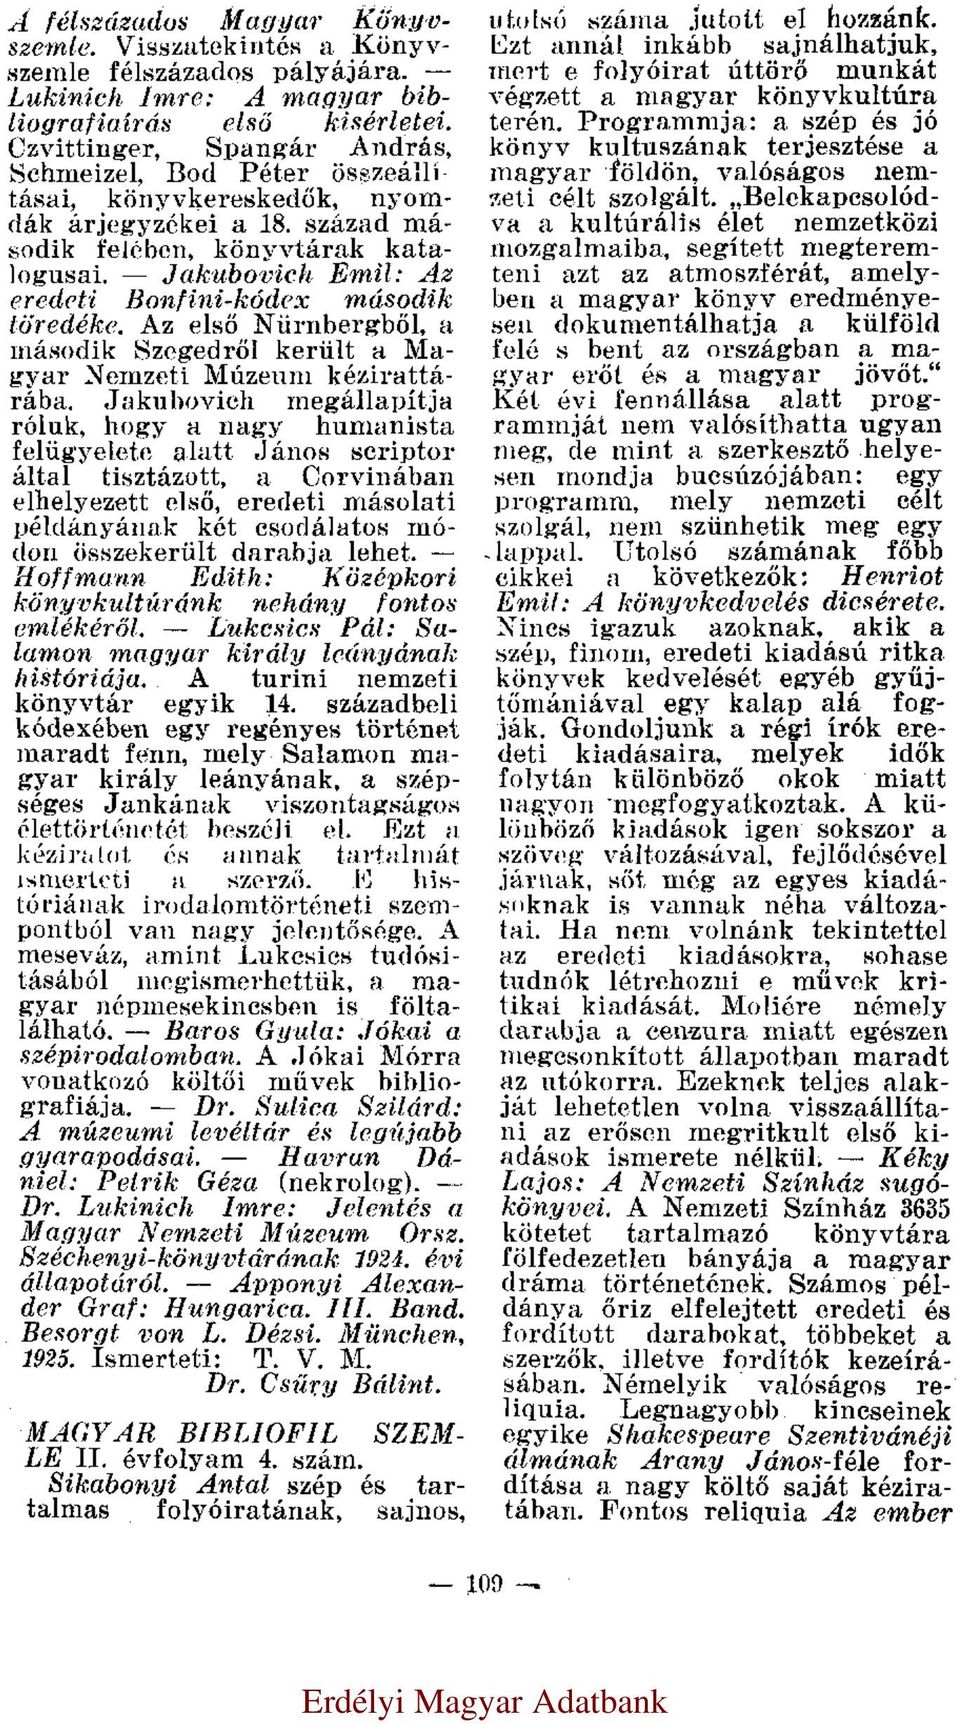 Jakubovich Emil: Az eredeti Bonfini-kódex második töredéke. Az első Nürnbergből, a második Szegedről került a Magyar Nemzeti Múzeum kézirattárába.